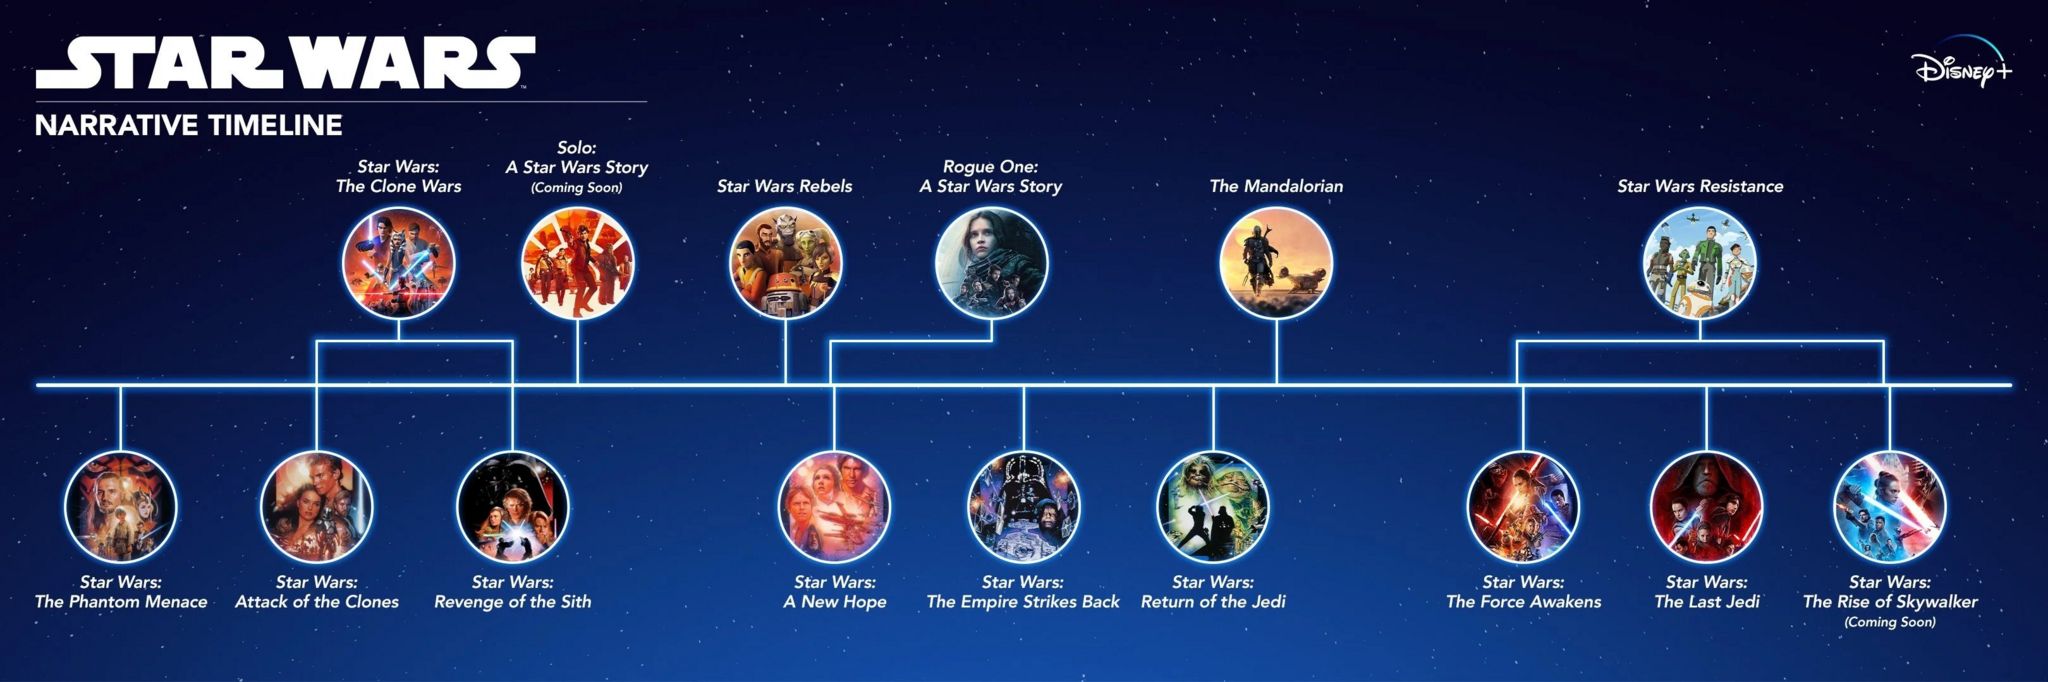 Star Wars timeline.